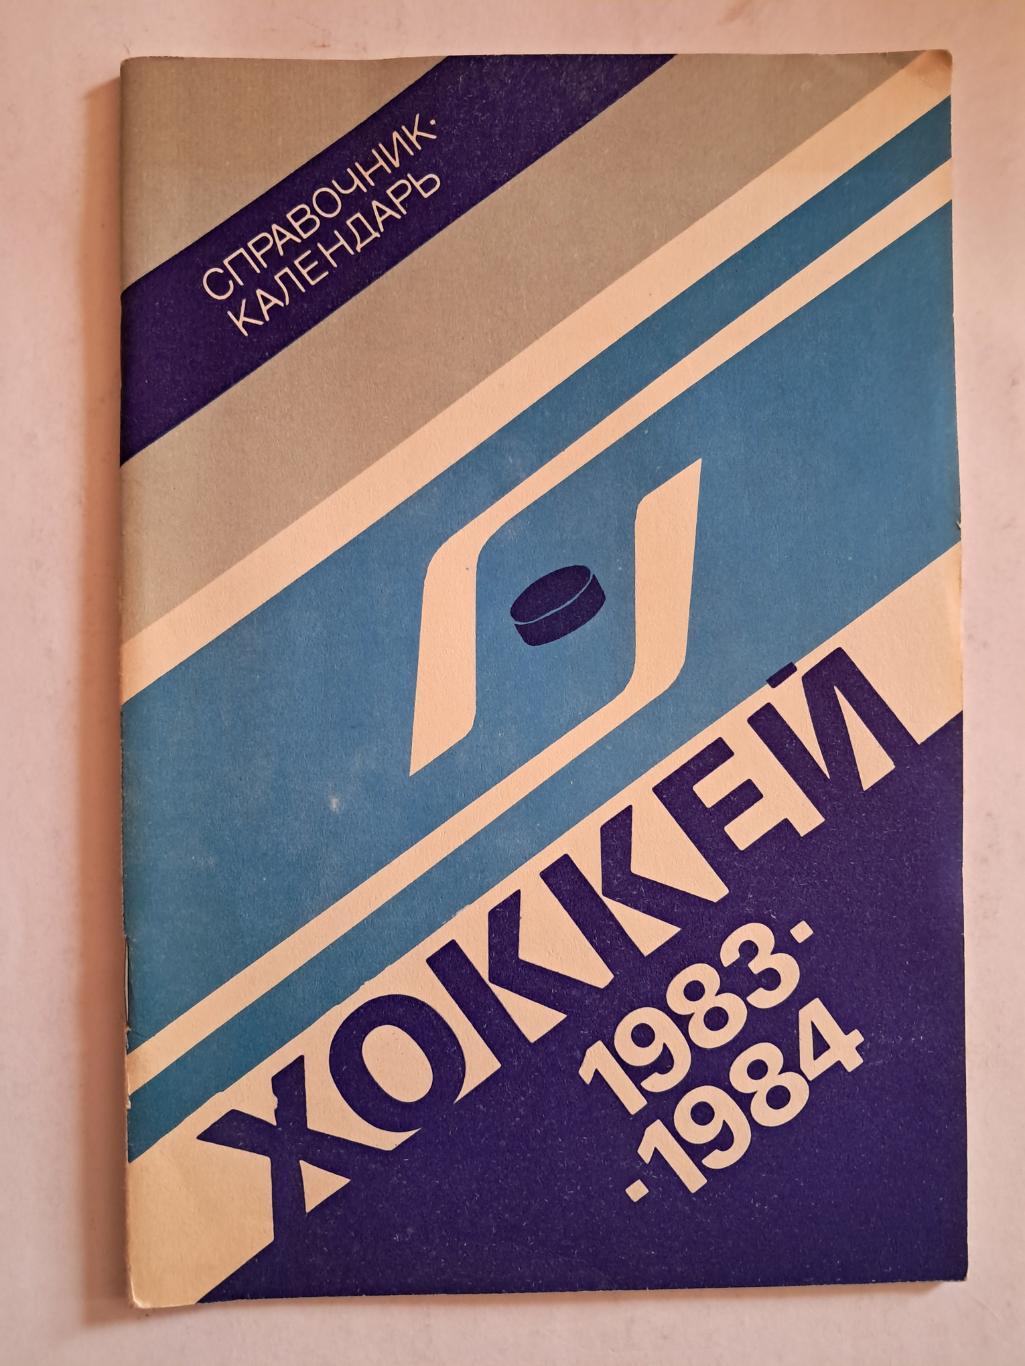 Календарь-справочник по хоккею 1983/1984 Москва